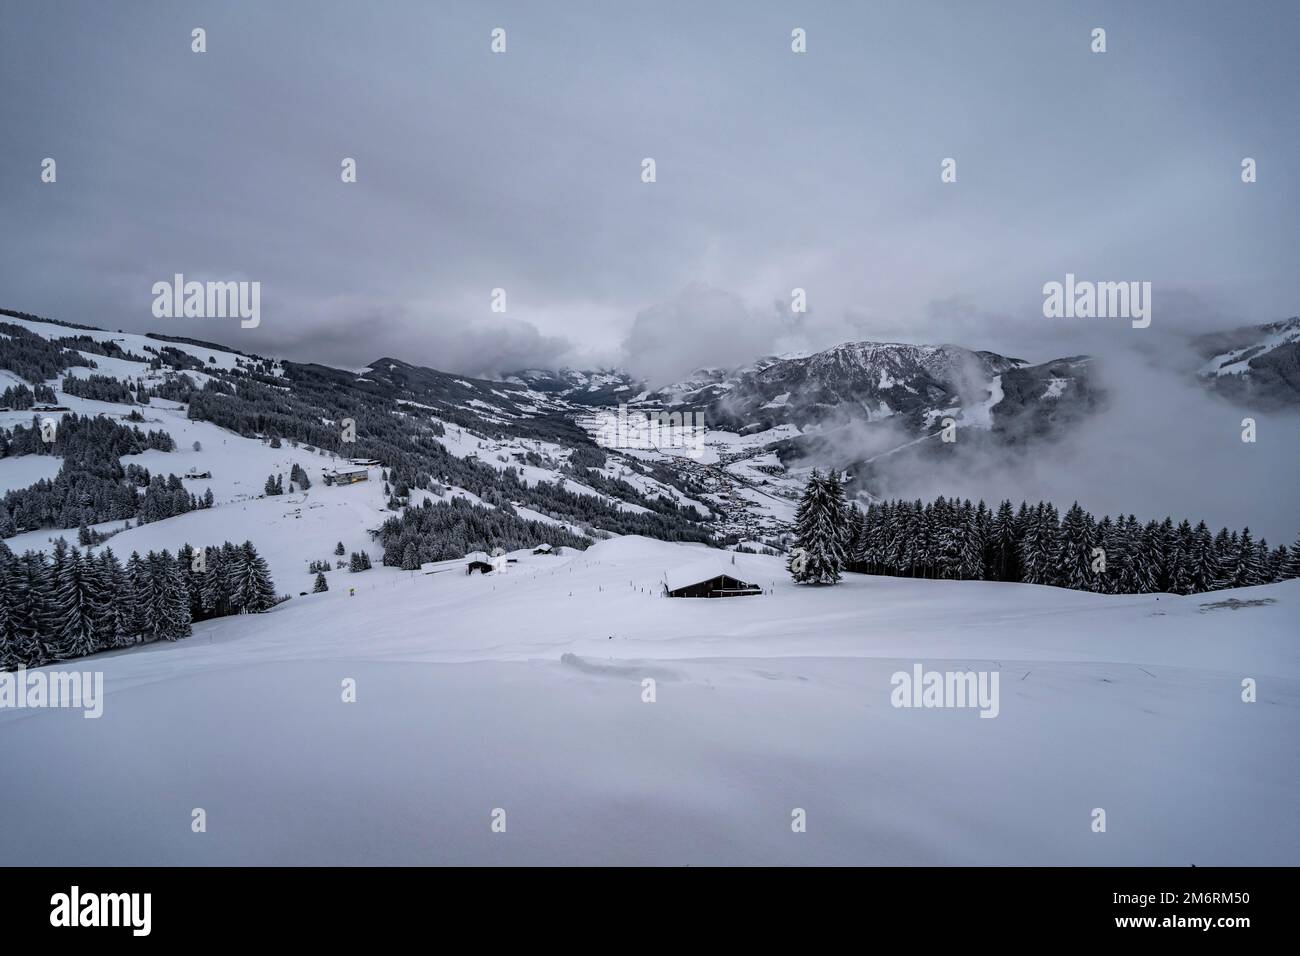 Paesaggio invernale, rifugio nella neve, nel comprensorio sciistico Bixen im Thale, Tirolo, Austria Foto Stock